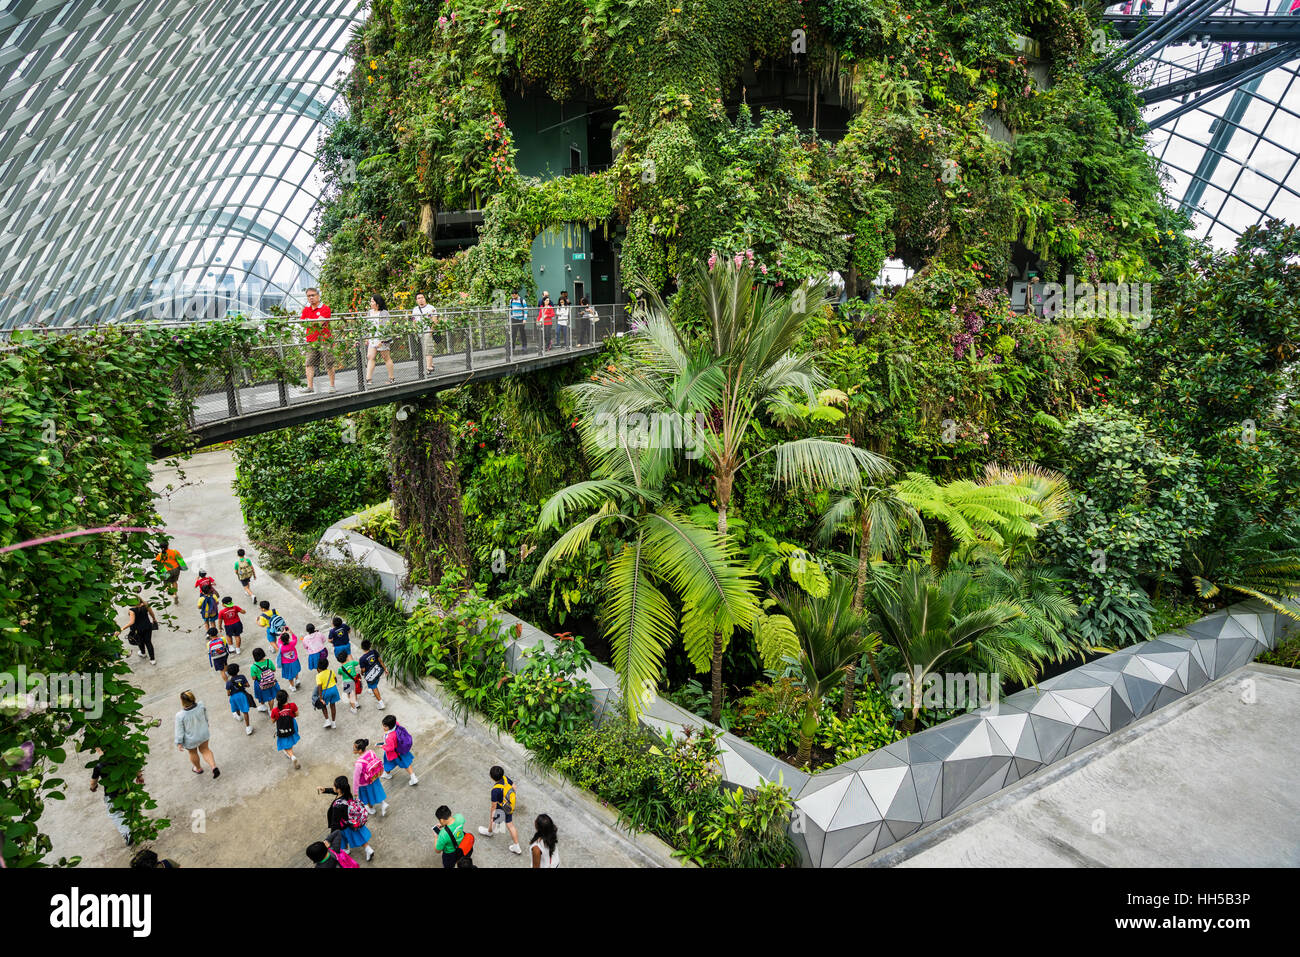 Singapour, les jardins de la baie, vue à partir de l'arbre de marche de la végétation luxuriante de la montagne Nuage géant vert forêt chambre Banque D'Images